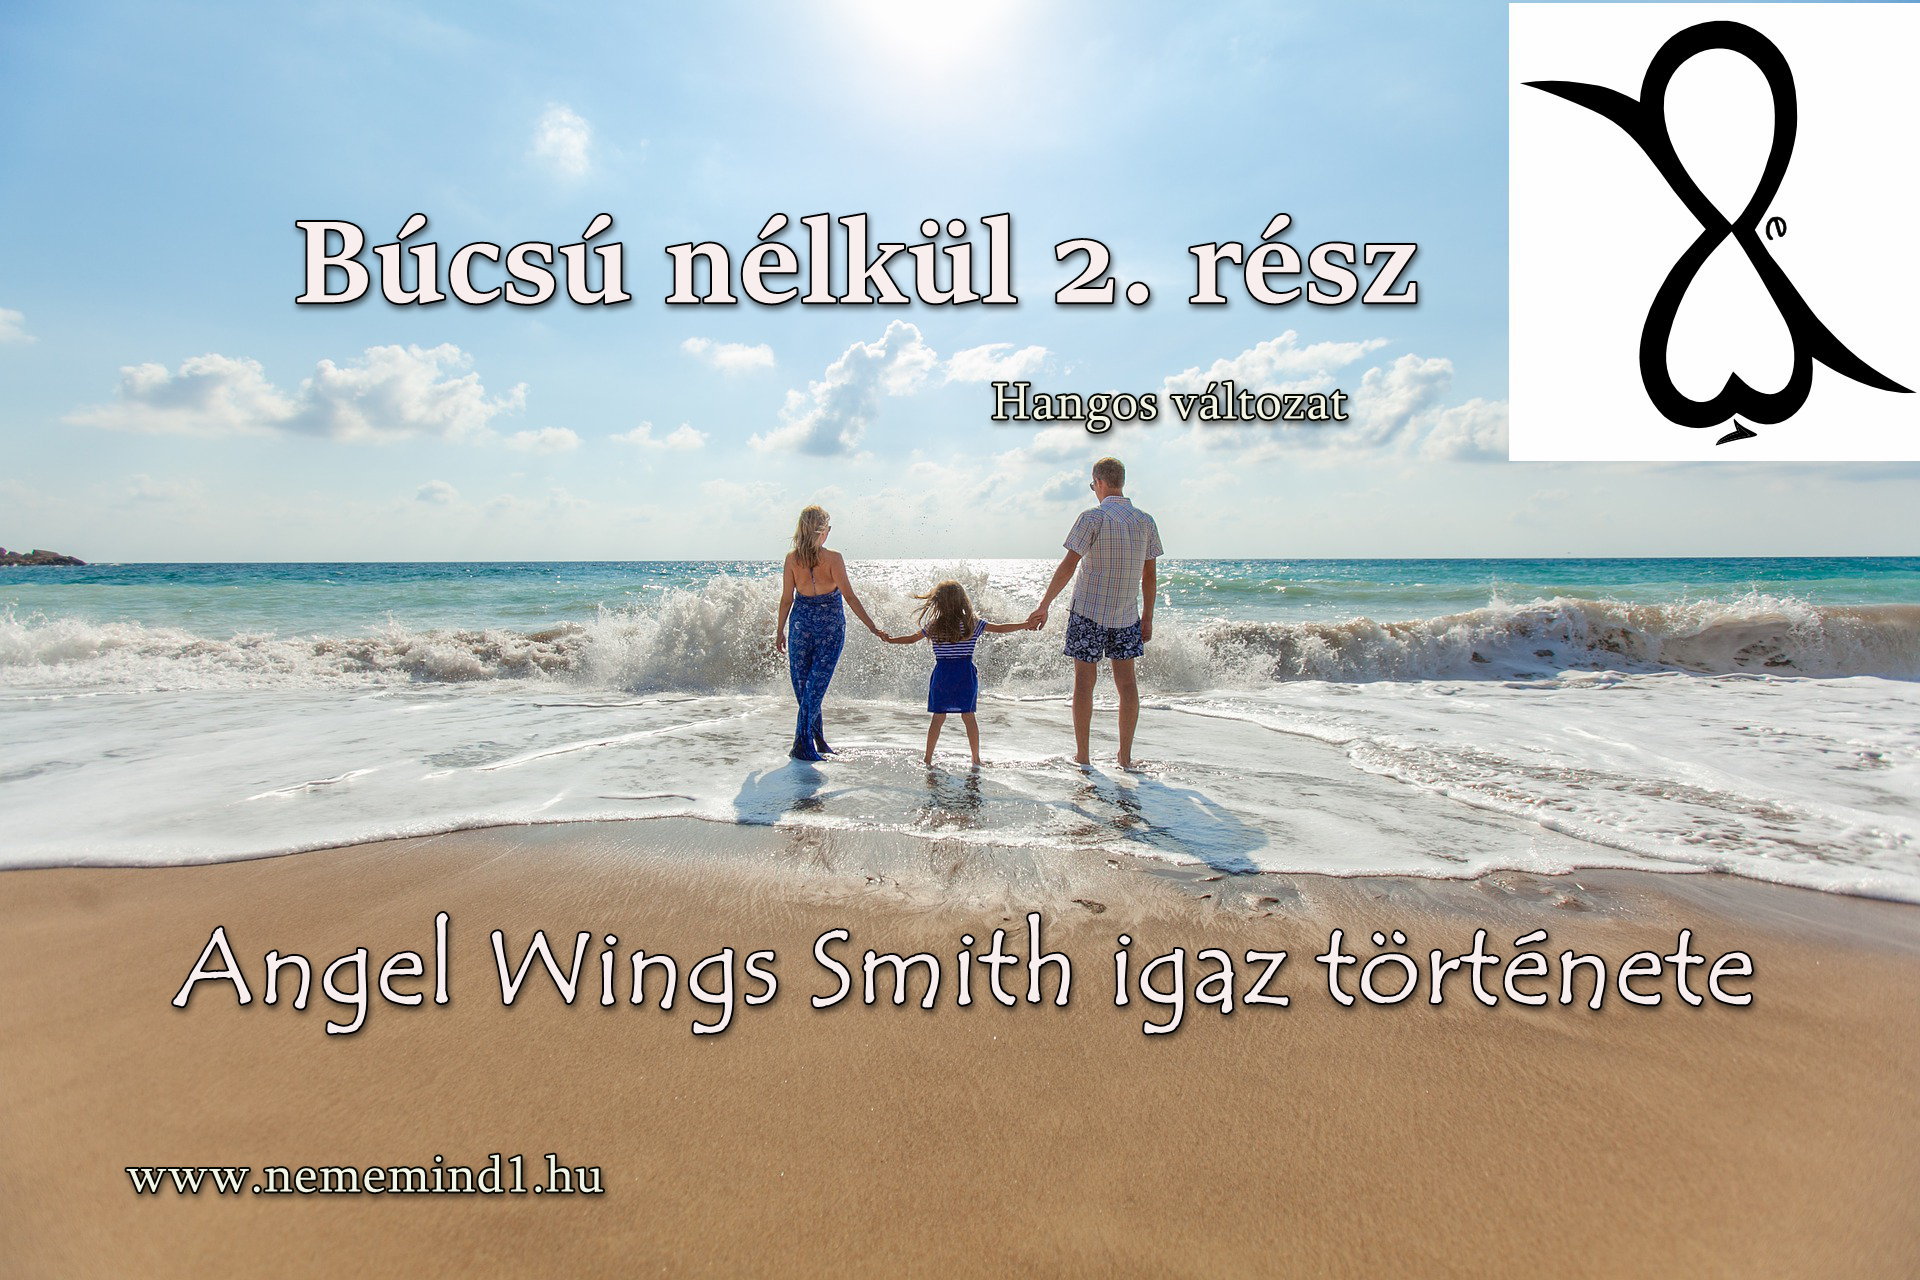 You are currently viewing Hangos igaz történeteink 60, Angel Wings Smith: Búcsú nélkül 2. rész